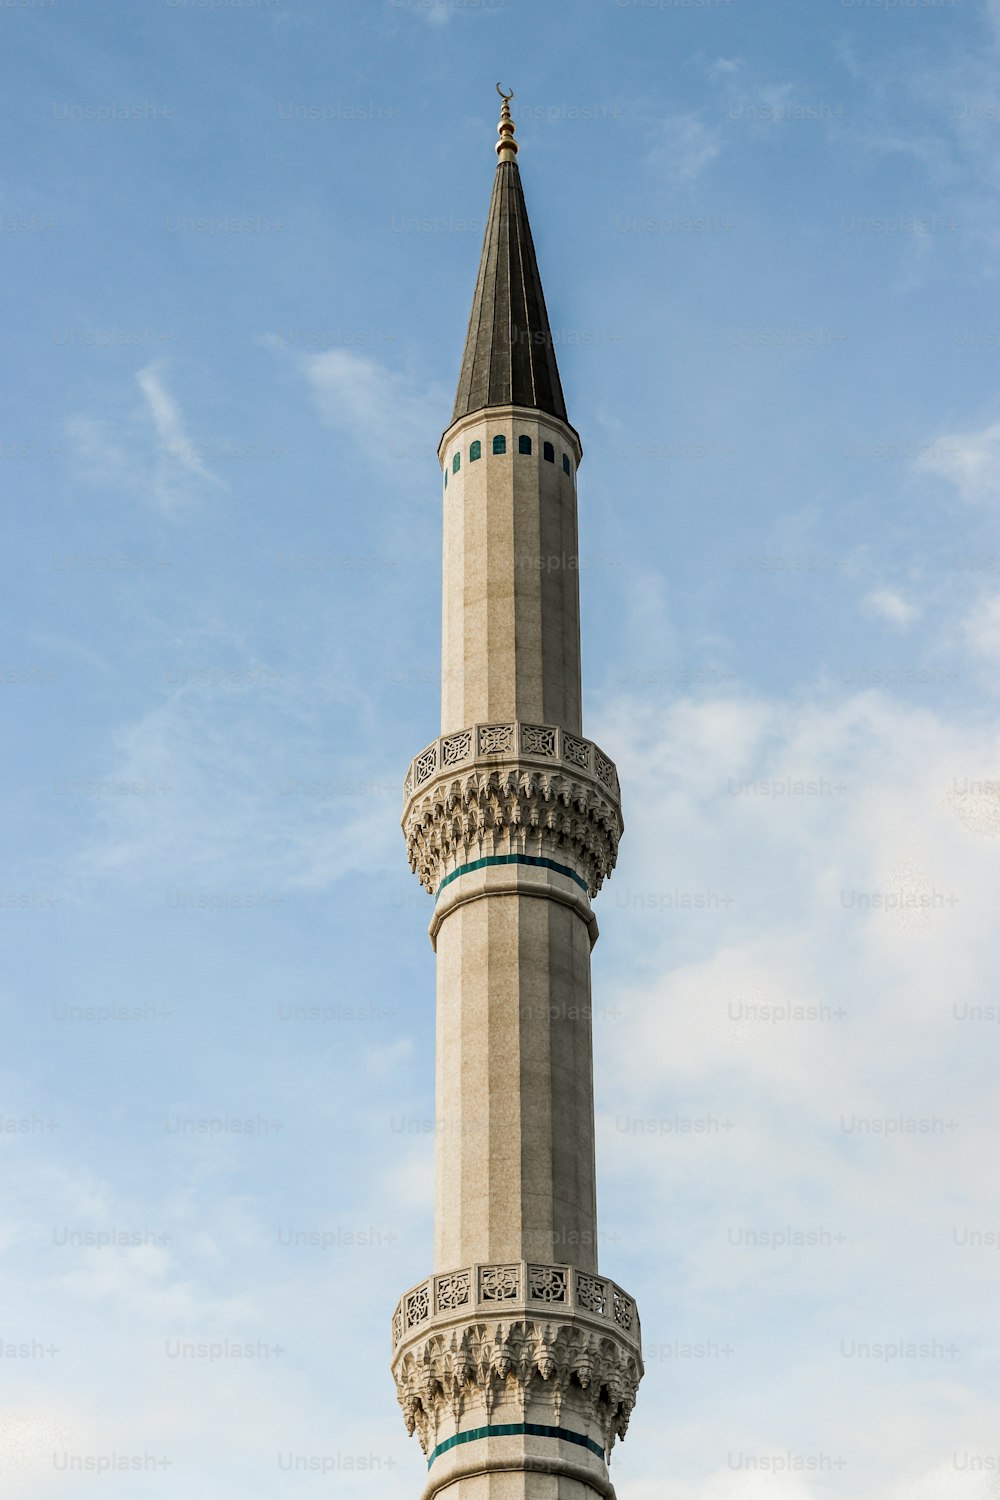 una torre alta con un reloj en la parte superior de la misma